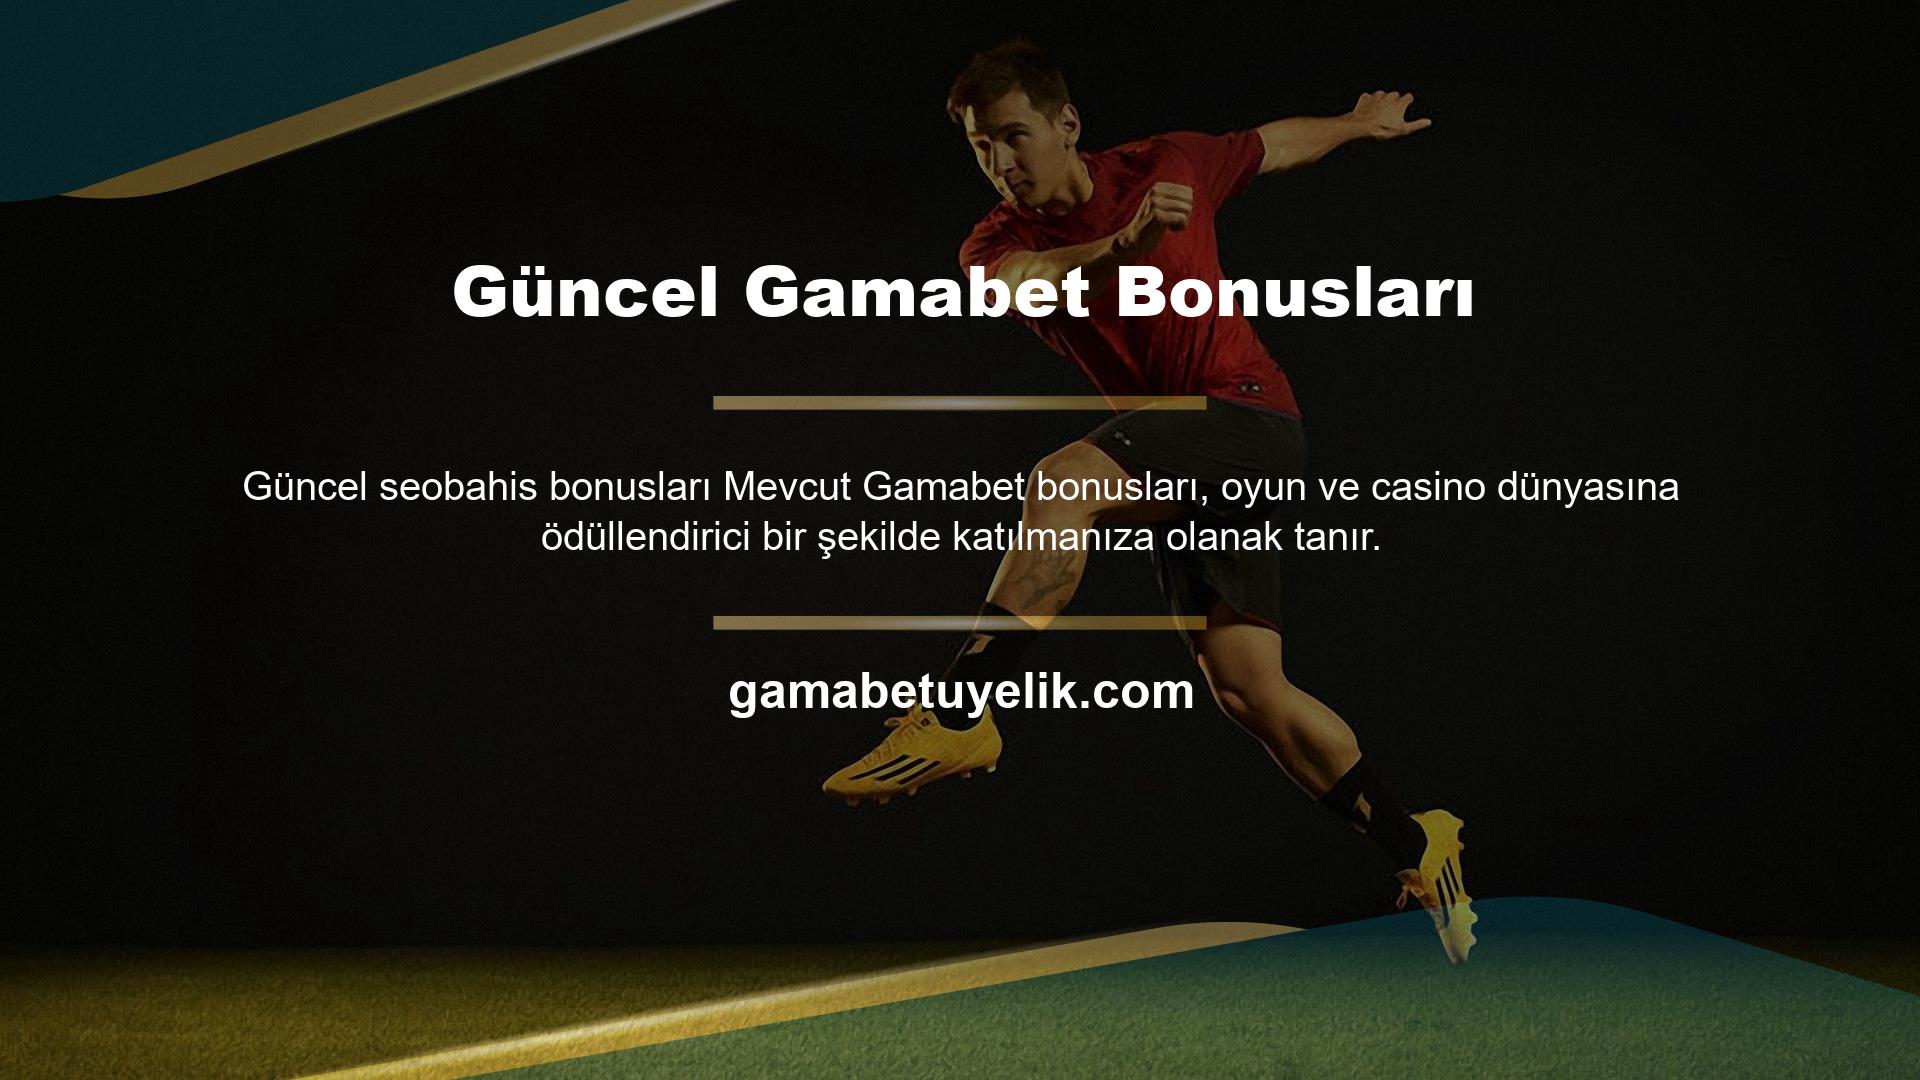 Gamabet, kullanıcılarına onlarca farklı bonus sunan, dünyanın en çok kullanılan web sitelerinden biridir